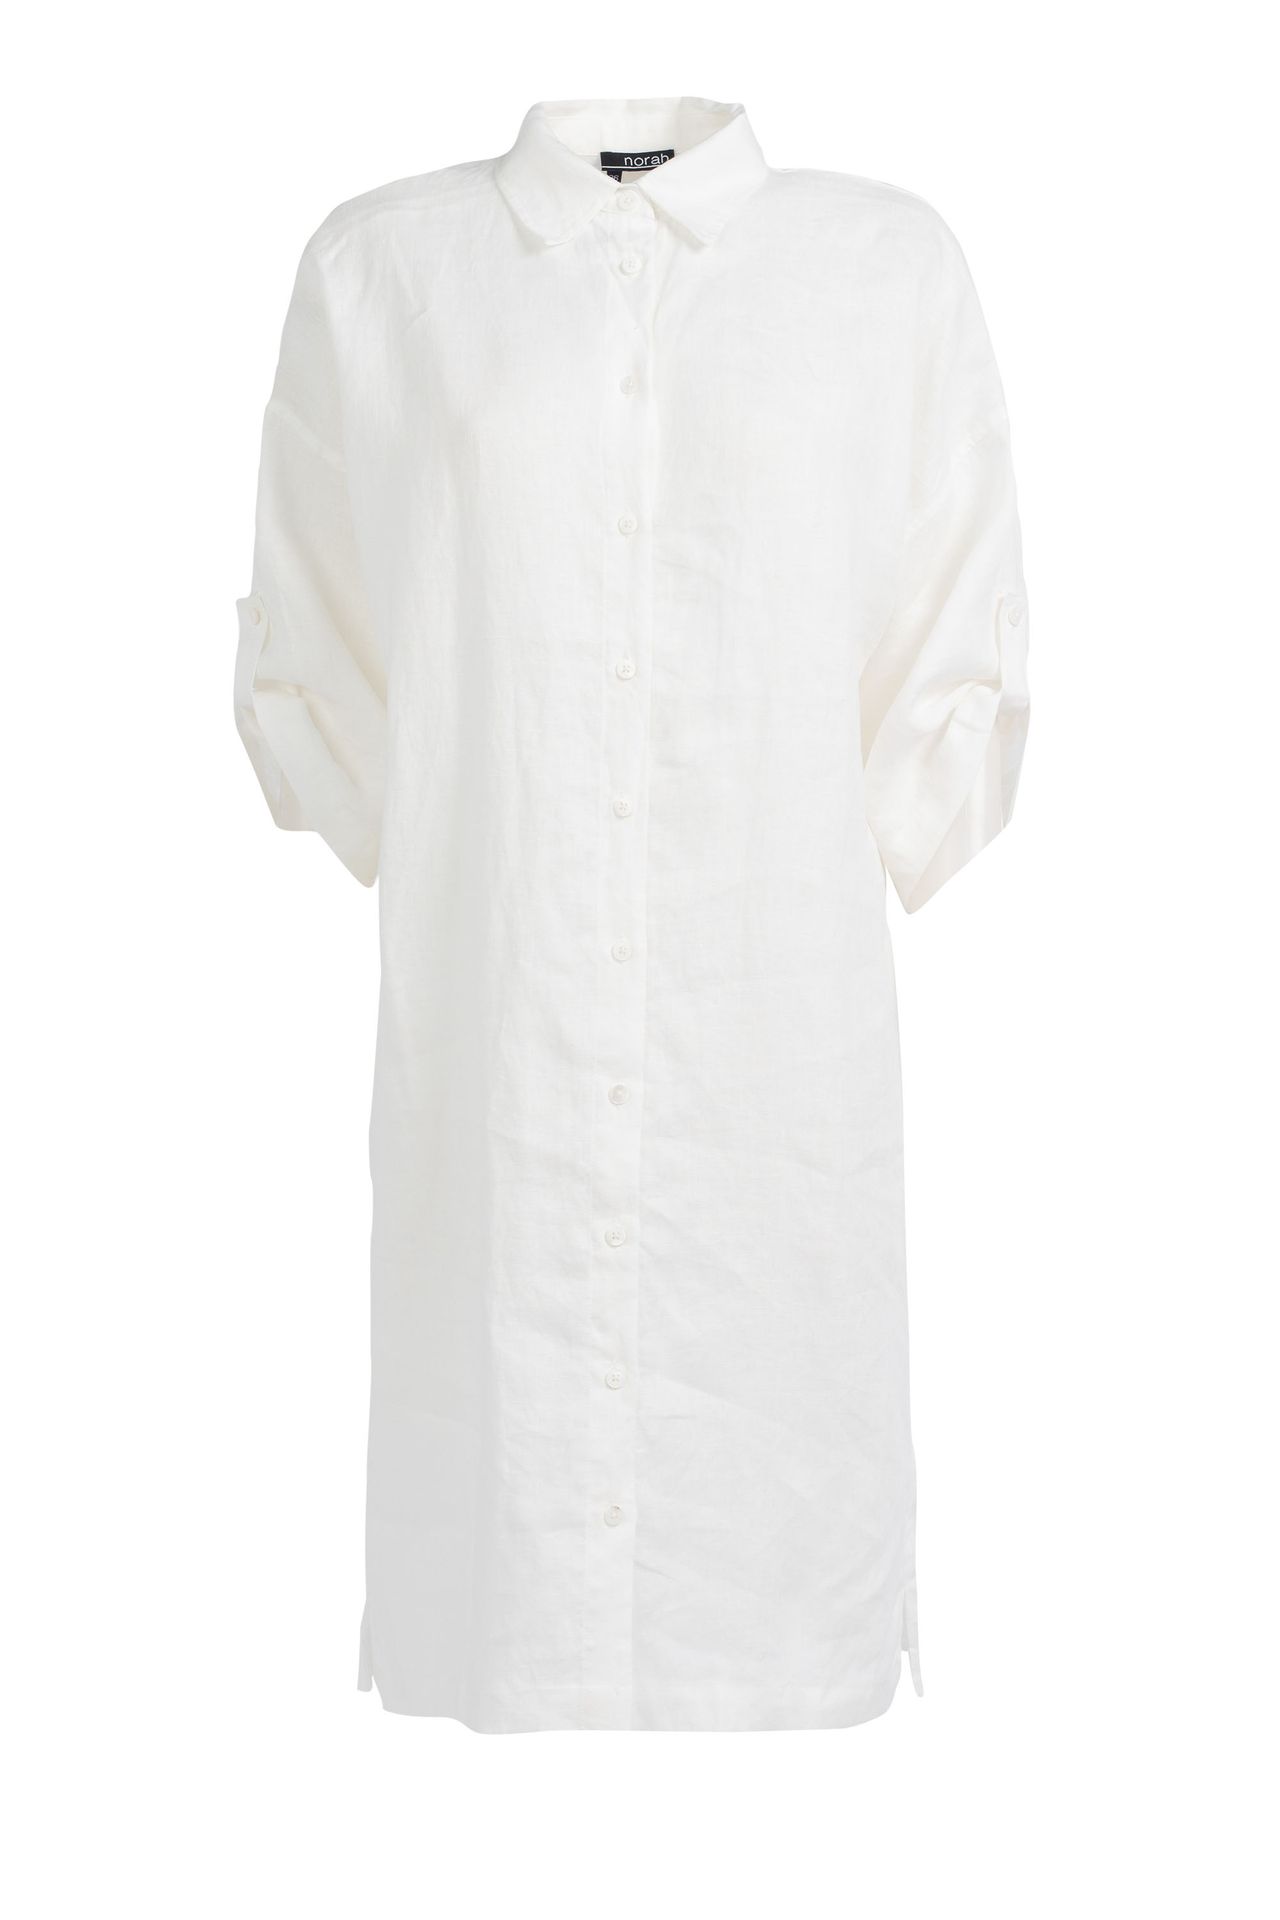 Norah Linnen blouse wit white 211589-100